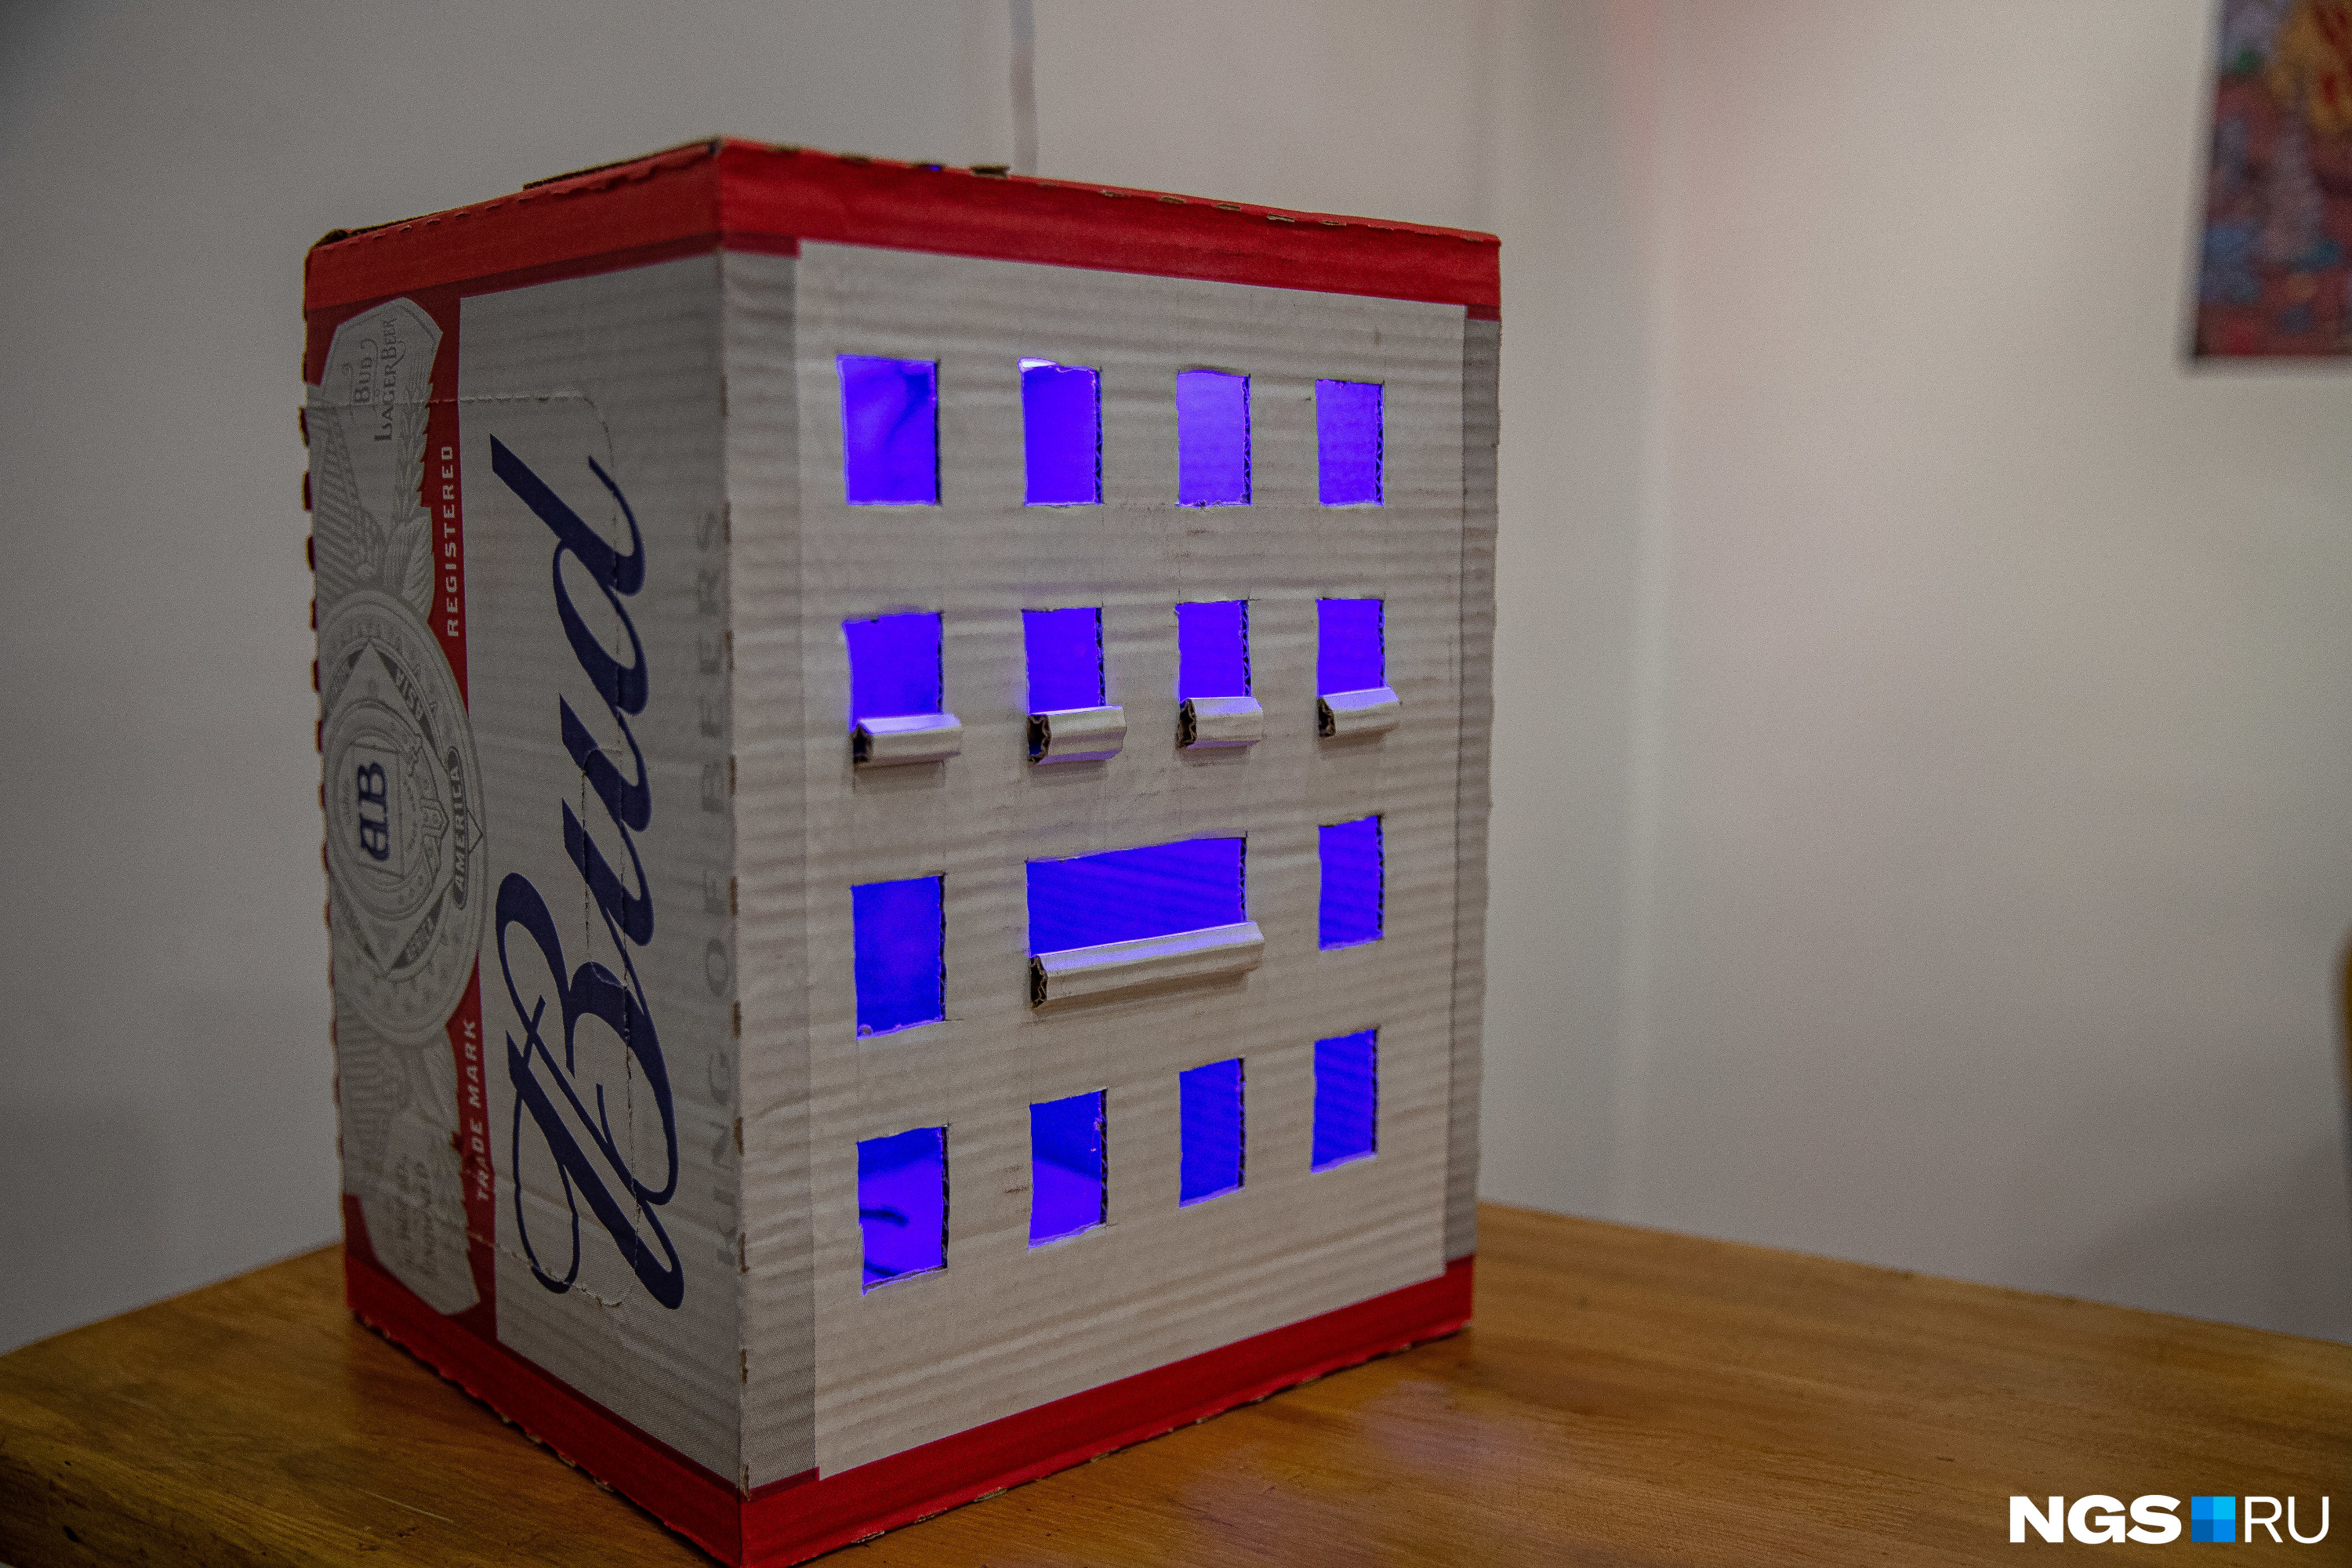 Этот экспонат выглядит не менее актуальным: многоквартирный дом из пивной коробки